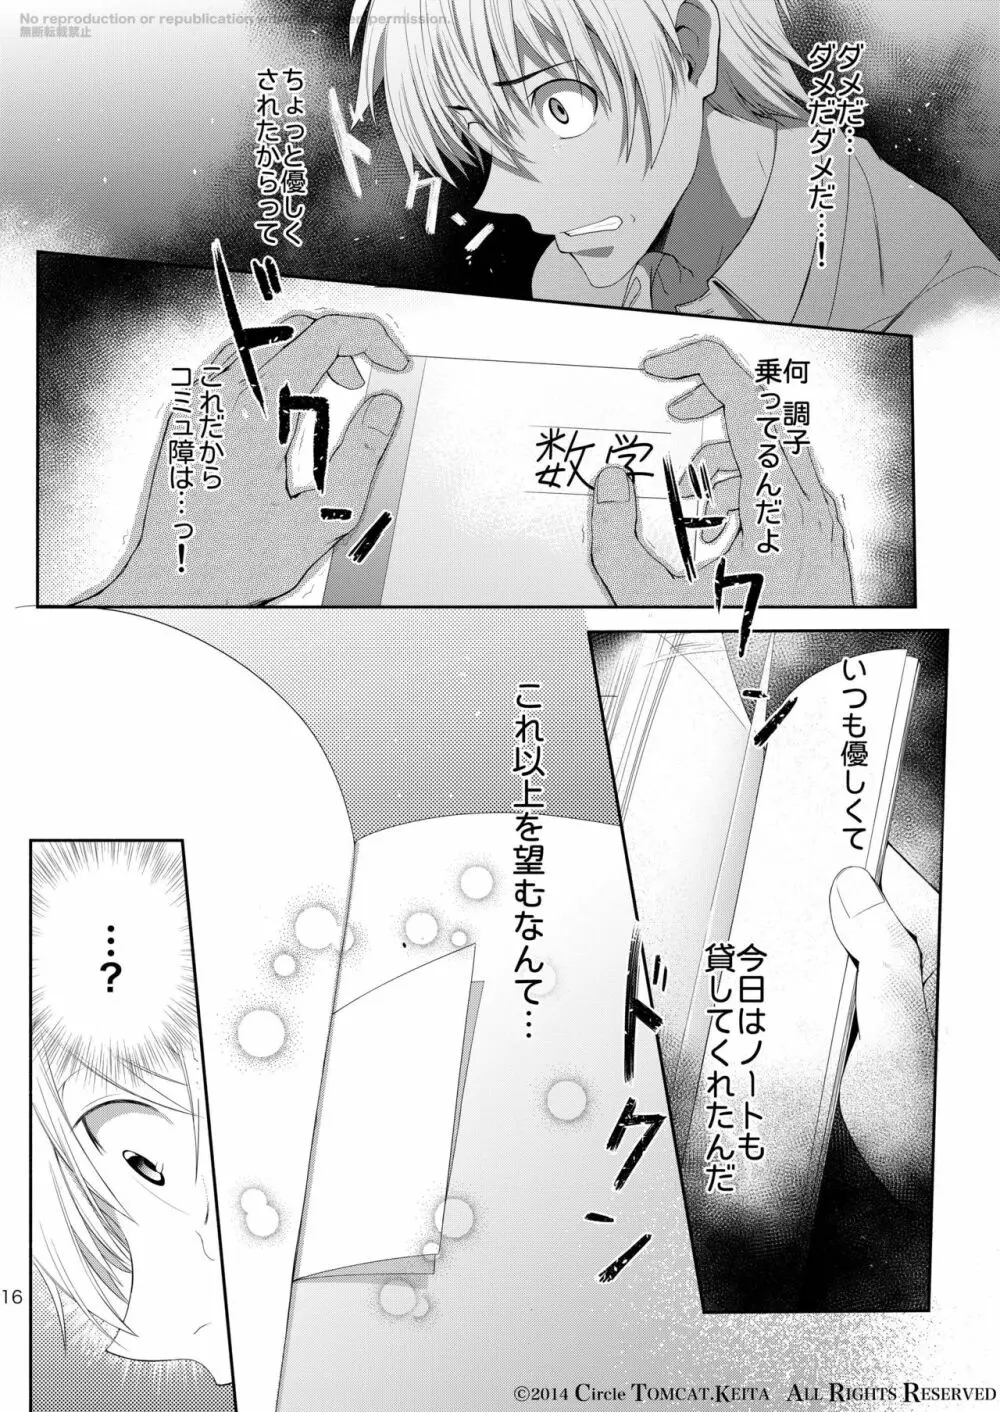 靑春 FORWARD #1 15ページ